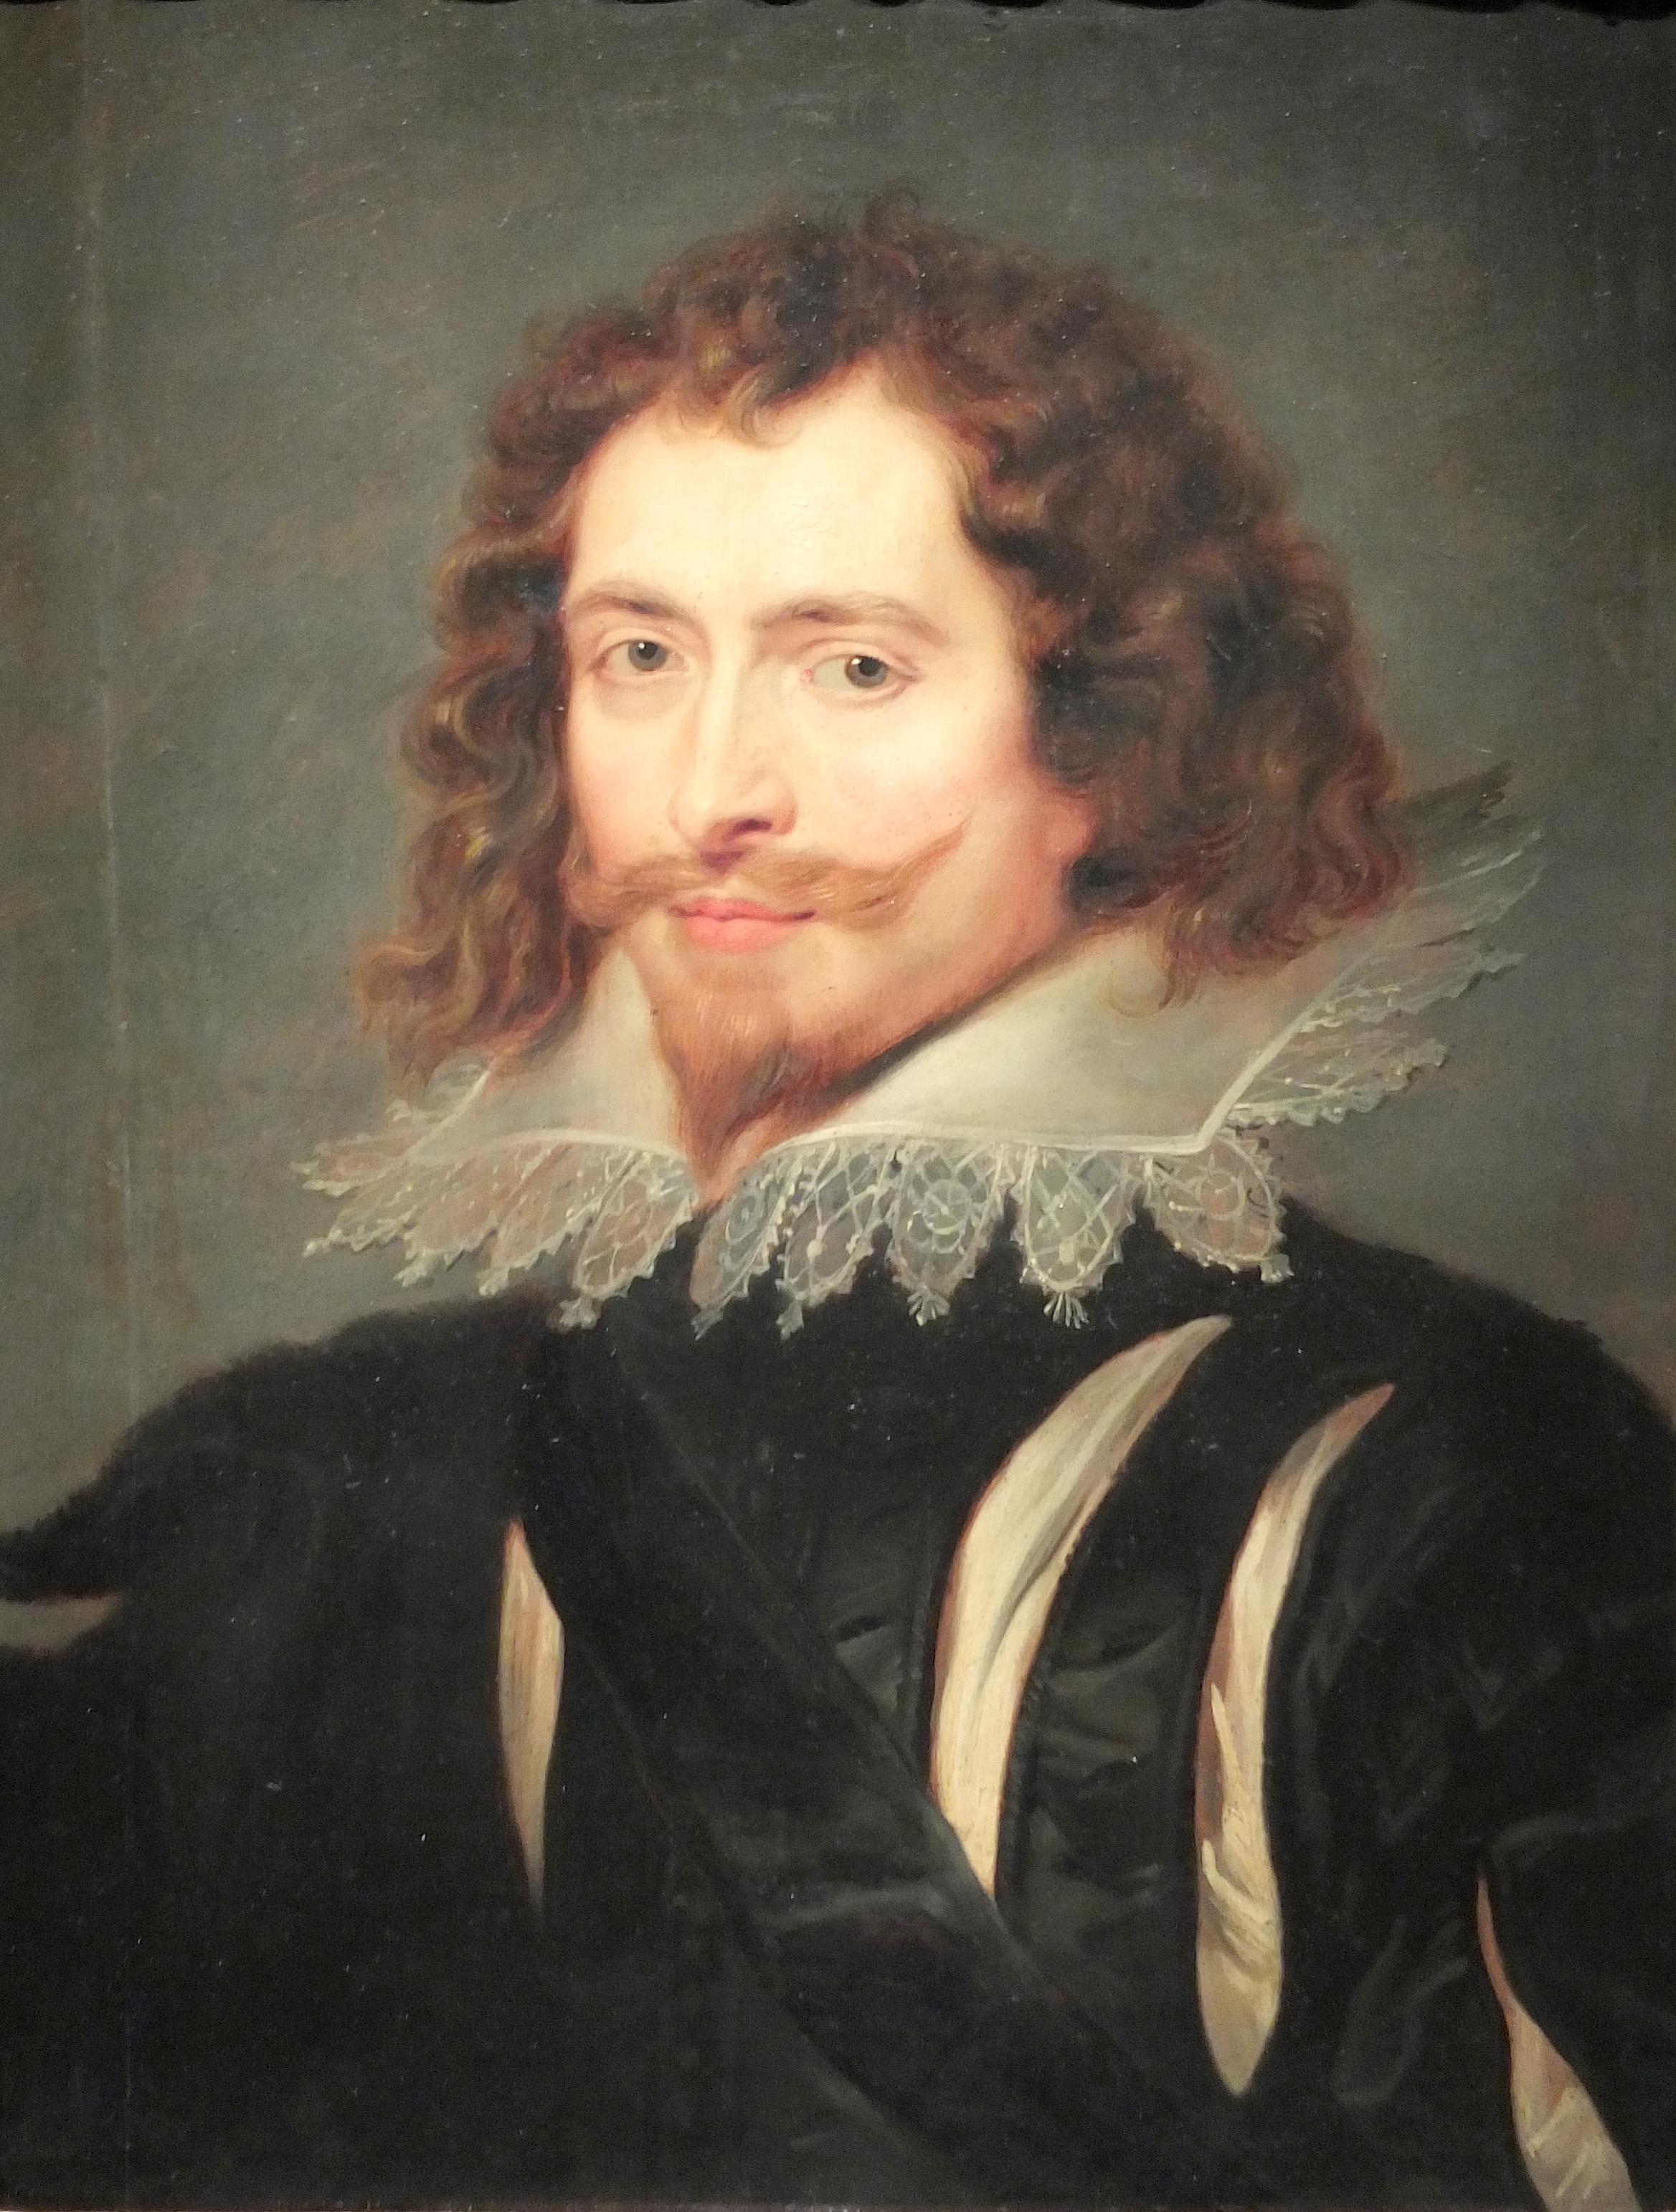 Portretul lui George Villiers, pictat de Rubens, a fost găsit după aproape 400 de ani | Informaţia Zilei